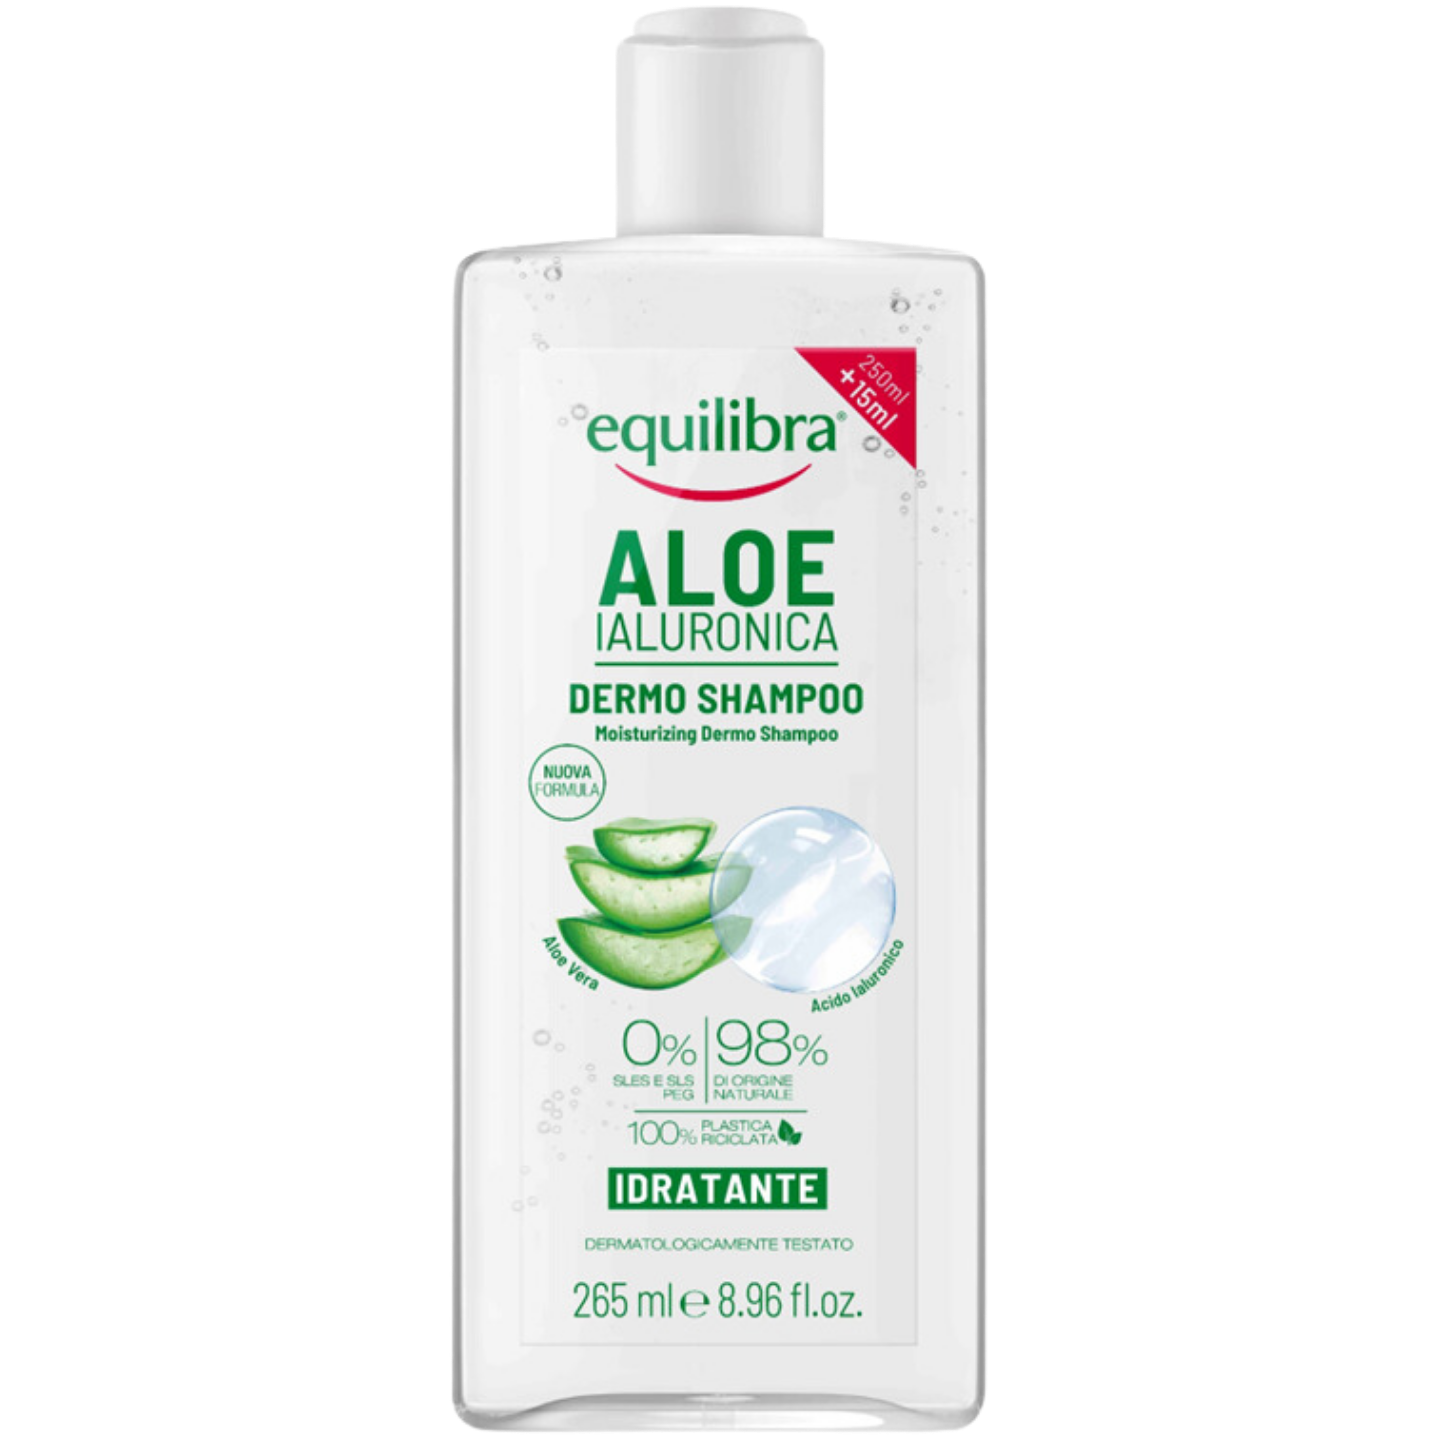 equilibra aloe szampon nawilżający 250ml 15 98 zł